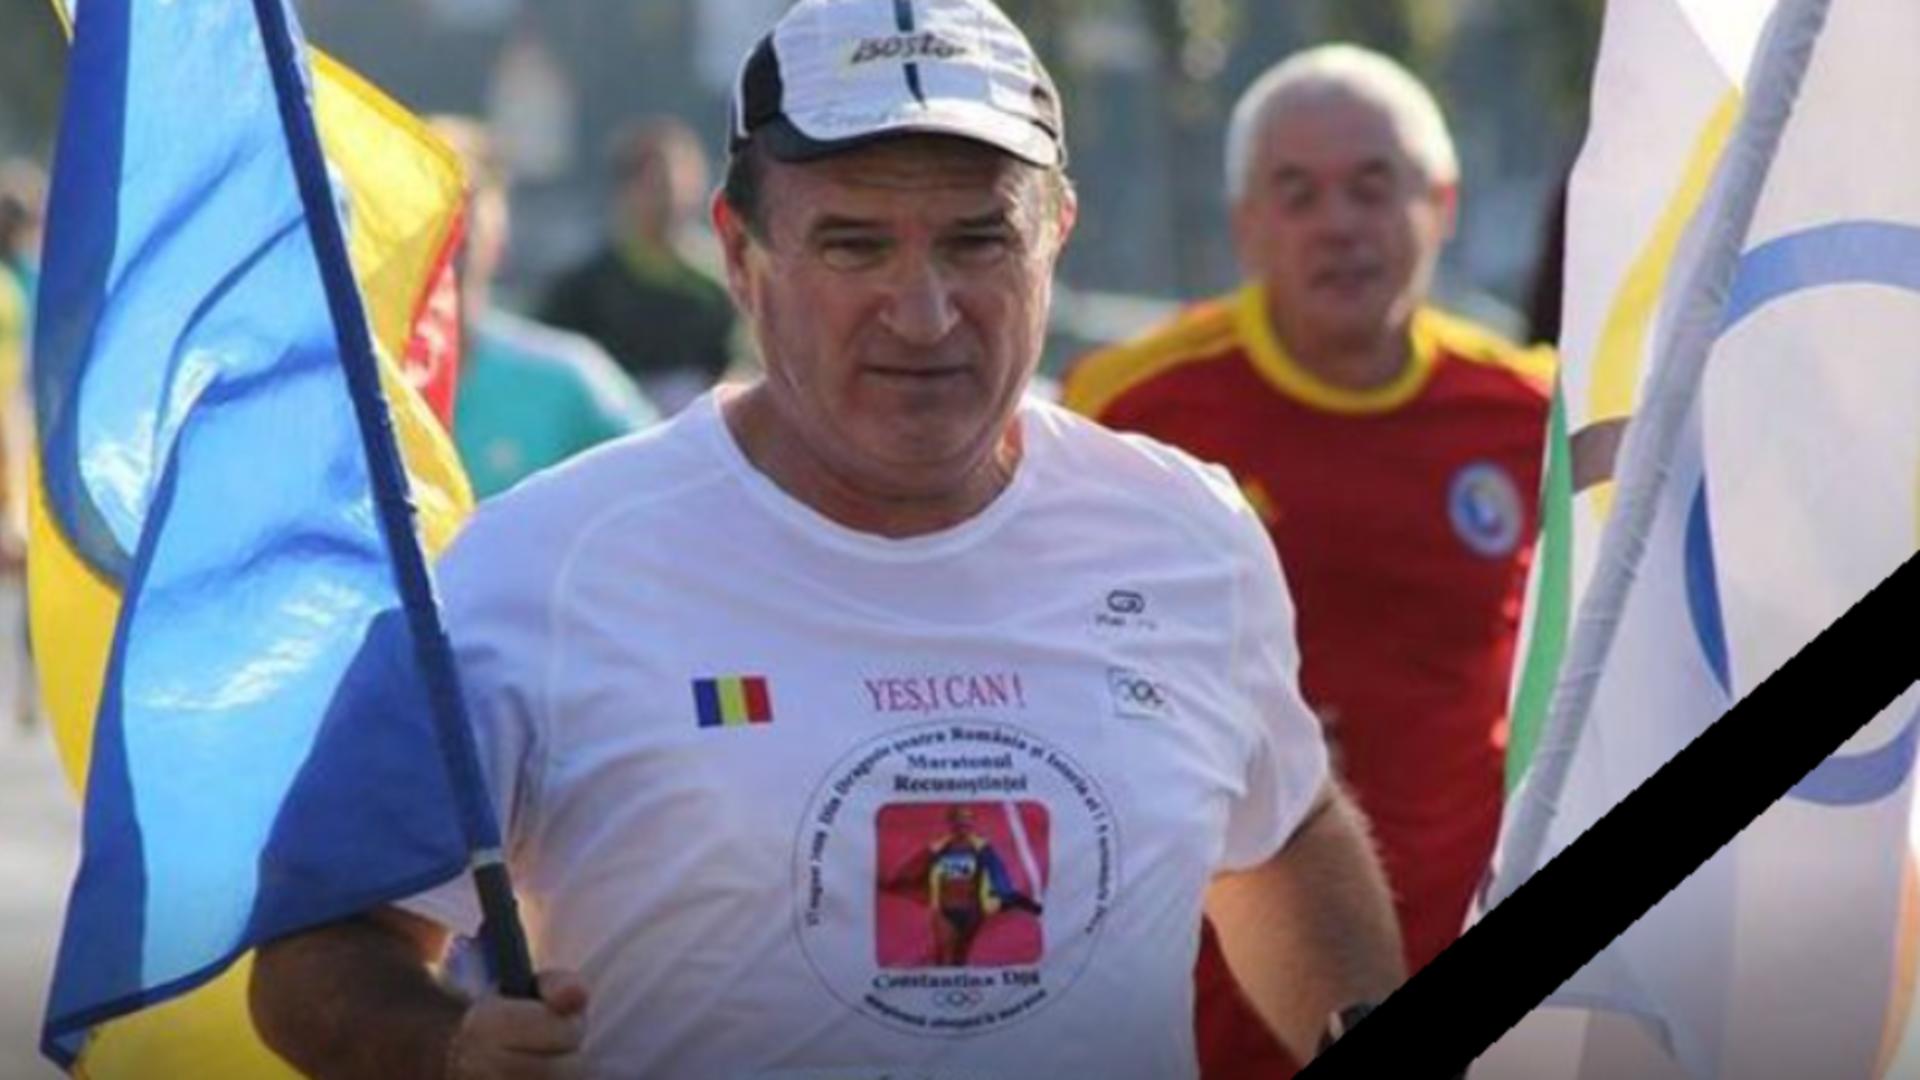 Tragedie în timpul Maratonului Unirii: Maratonistul Ilie Roşu a decedat după ce a făcut stop cardiac în timpul competiției sportive